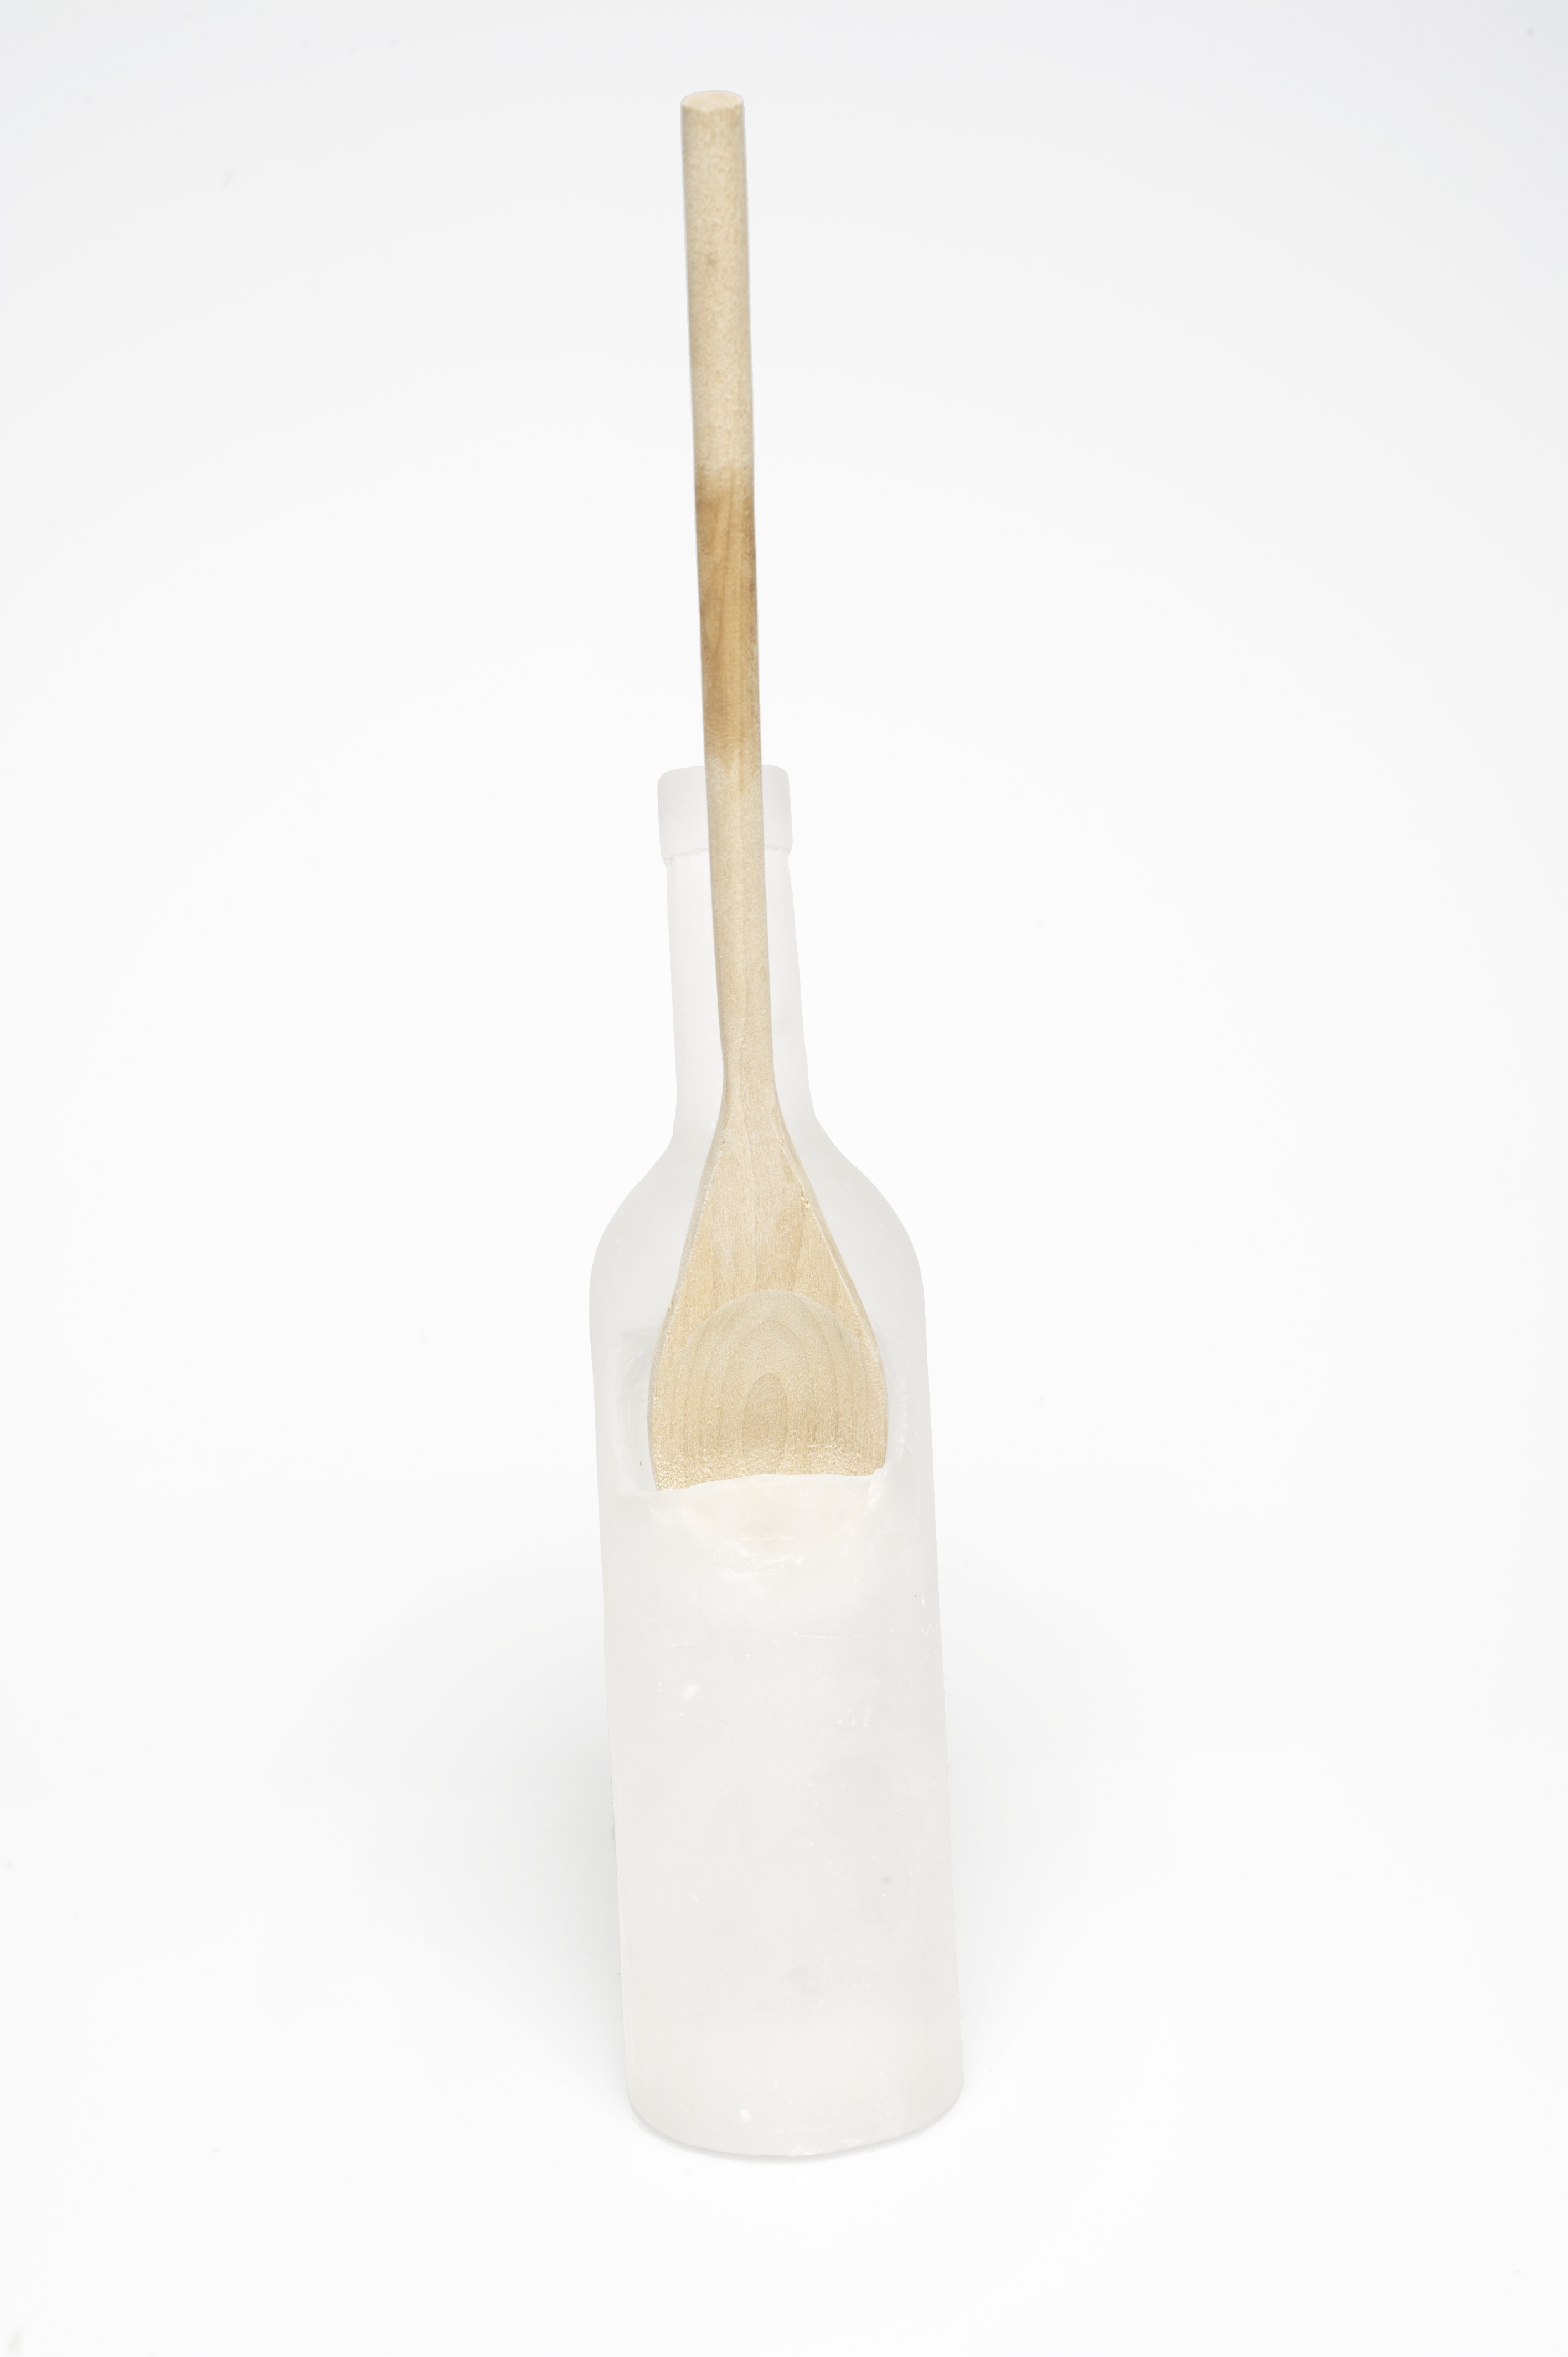 Spoon rest in a wine bottle shape holding a wood spoon.